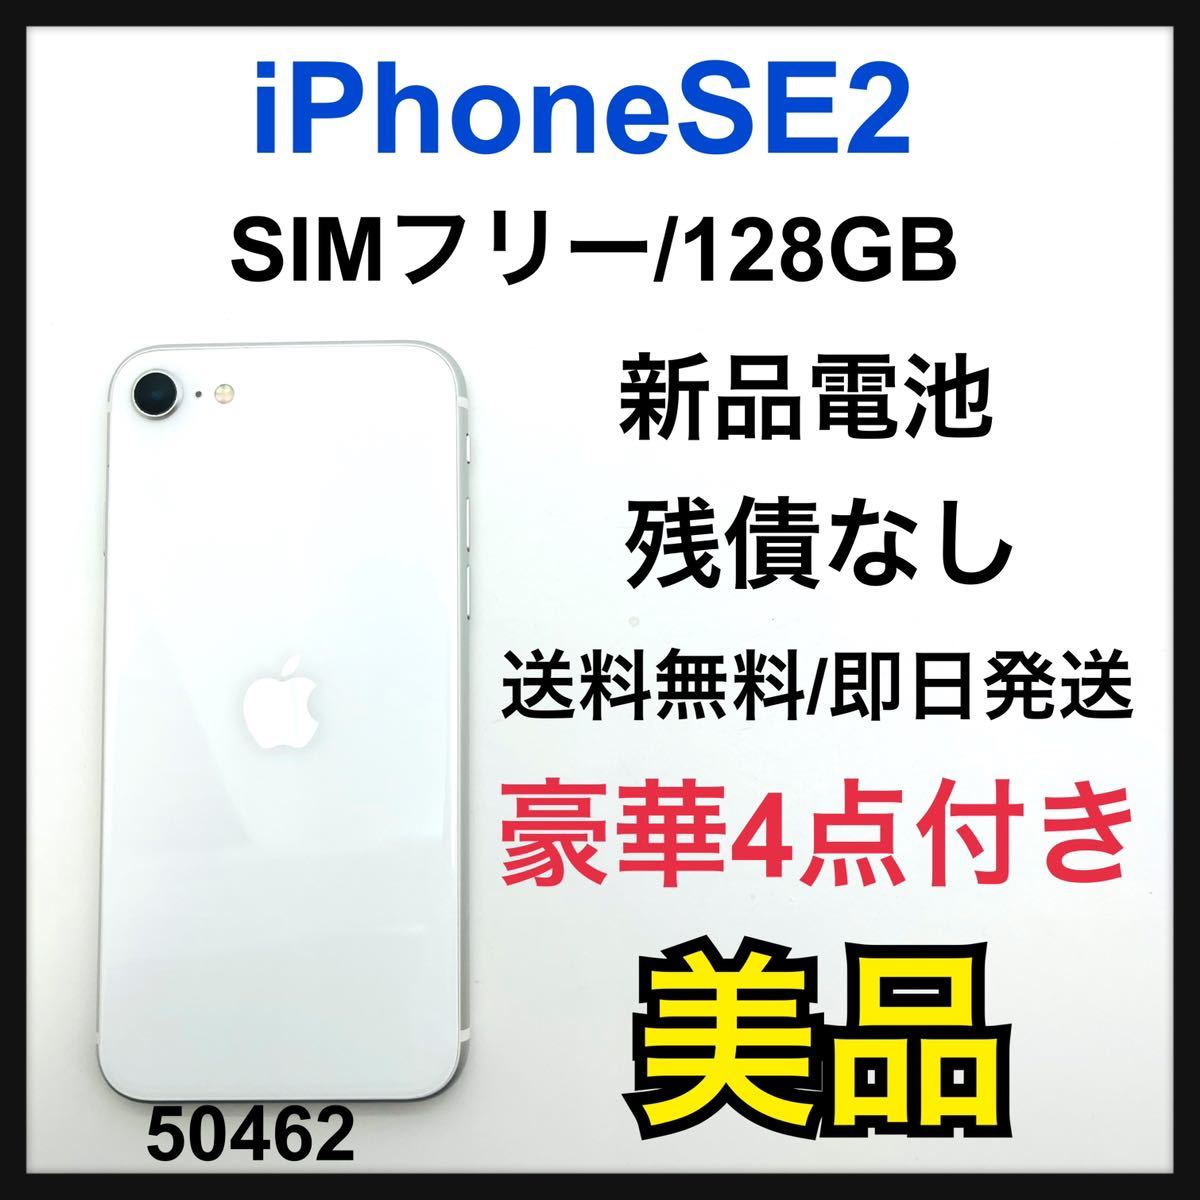 お気に入り SE iPhone 第2世代 SIMフリー GB 128 ホワイト (SE2